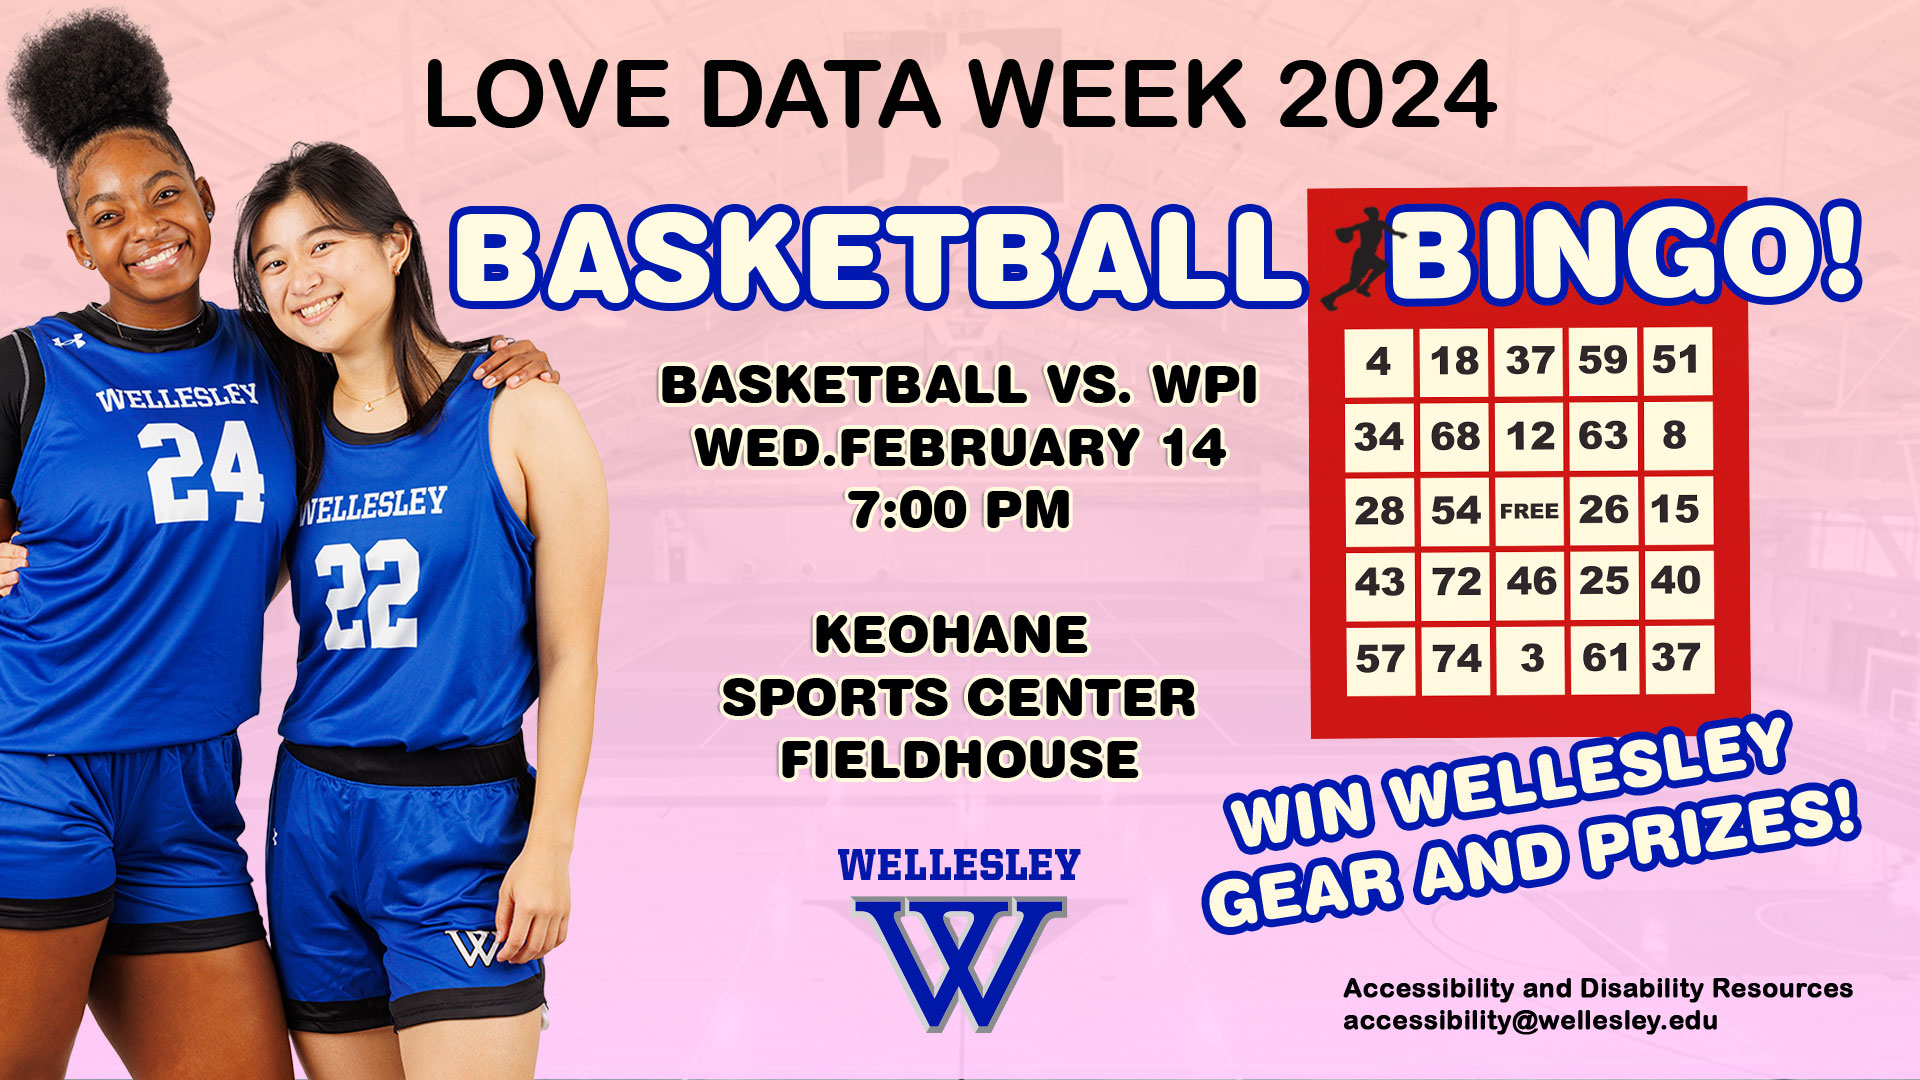 Wellesley basketball will host Love Data Week Basketball Bingo on Wednesday, February 14.